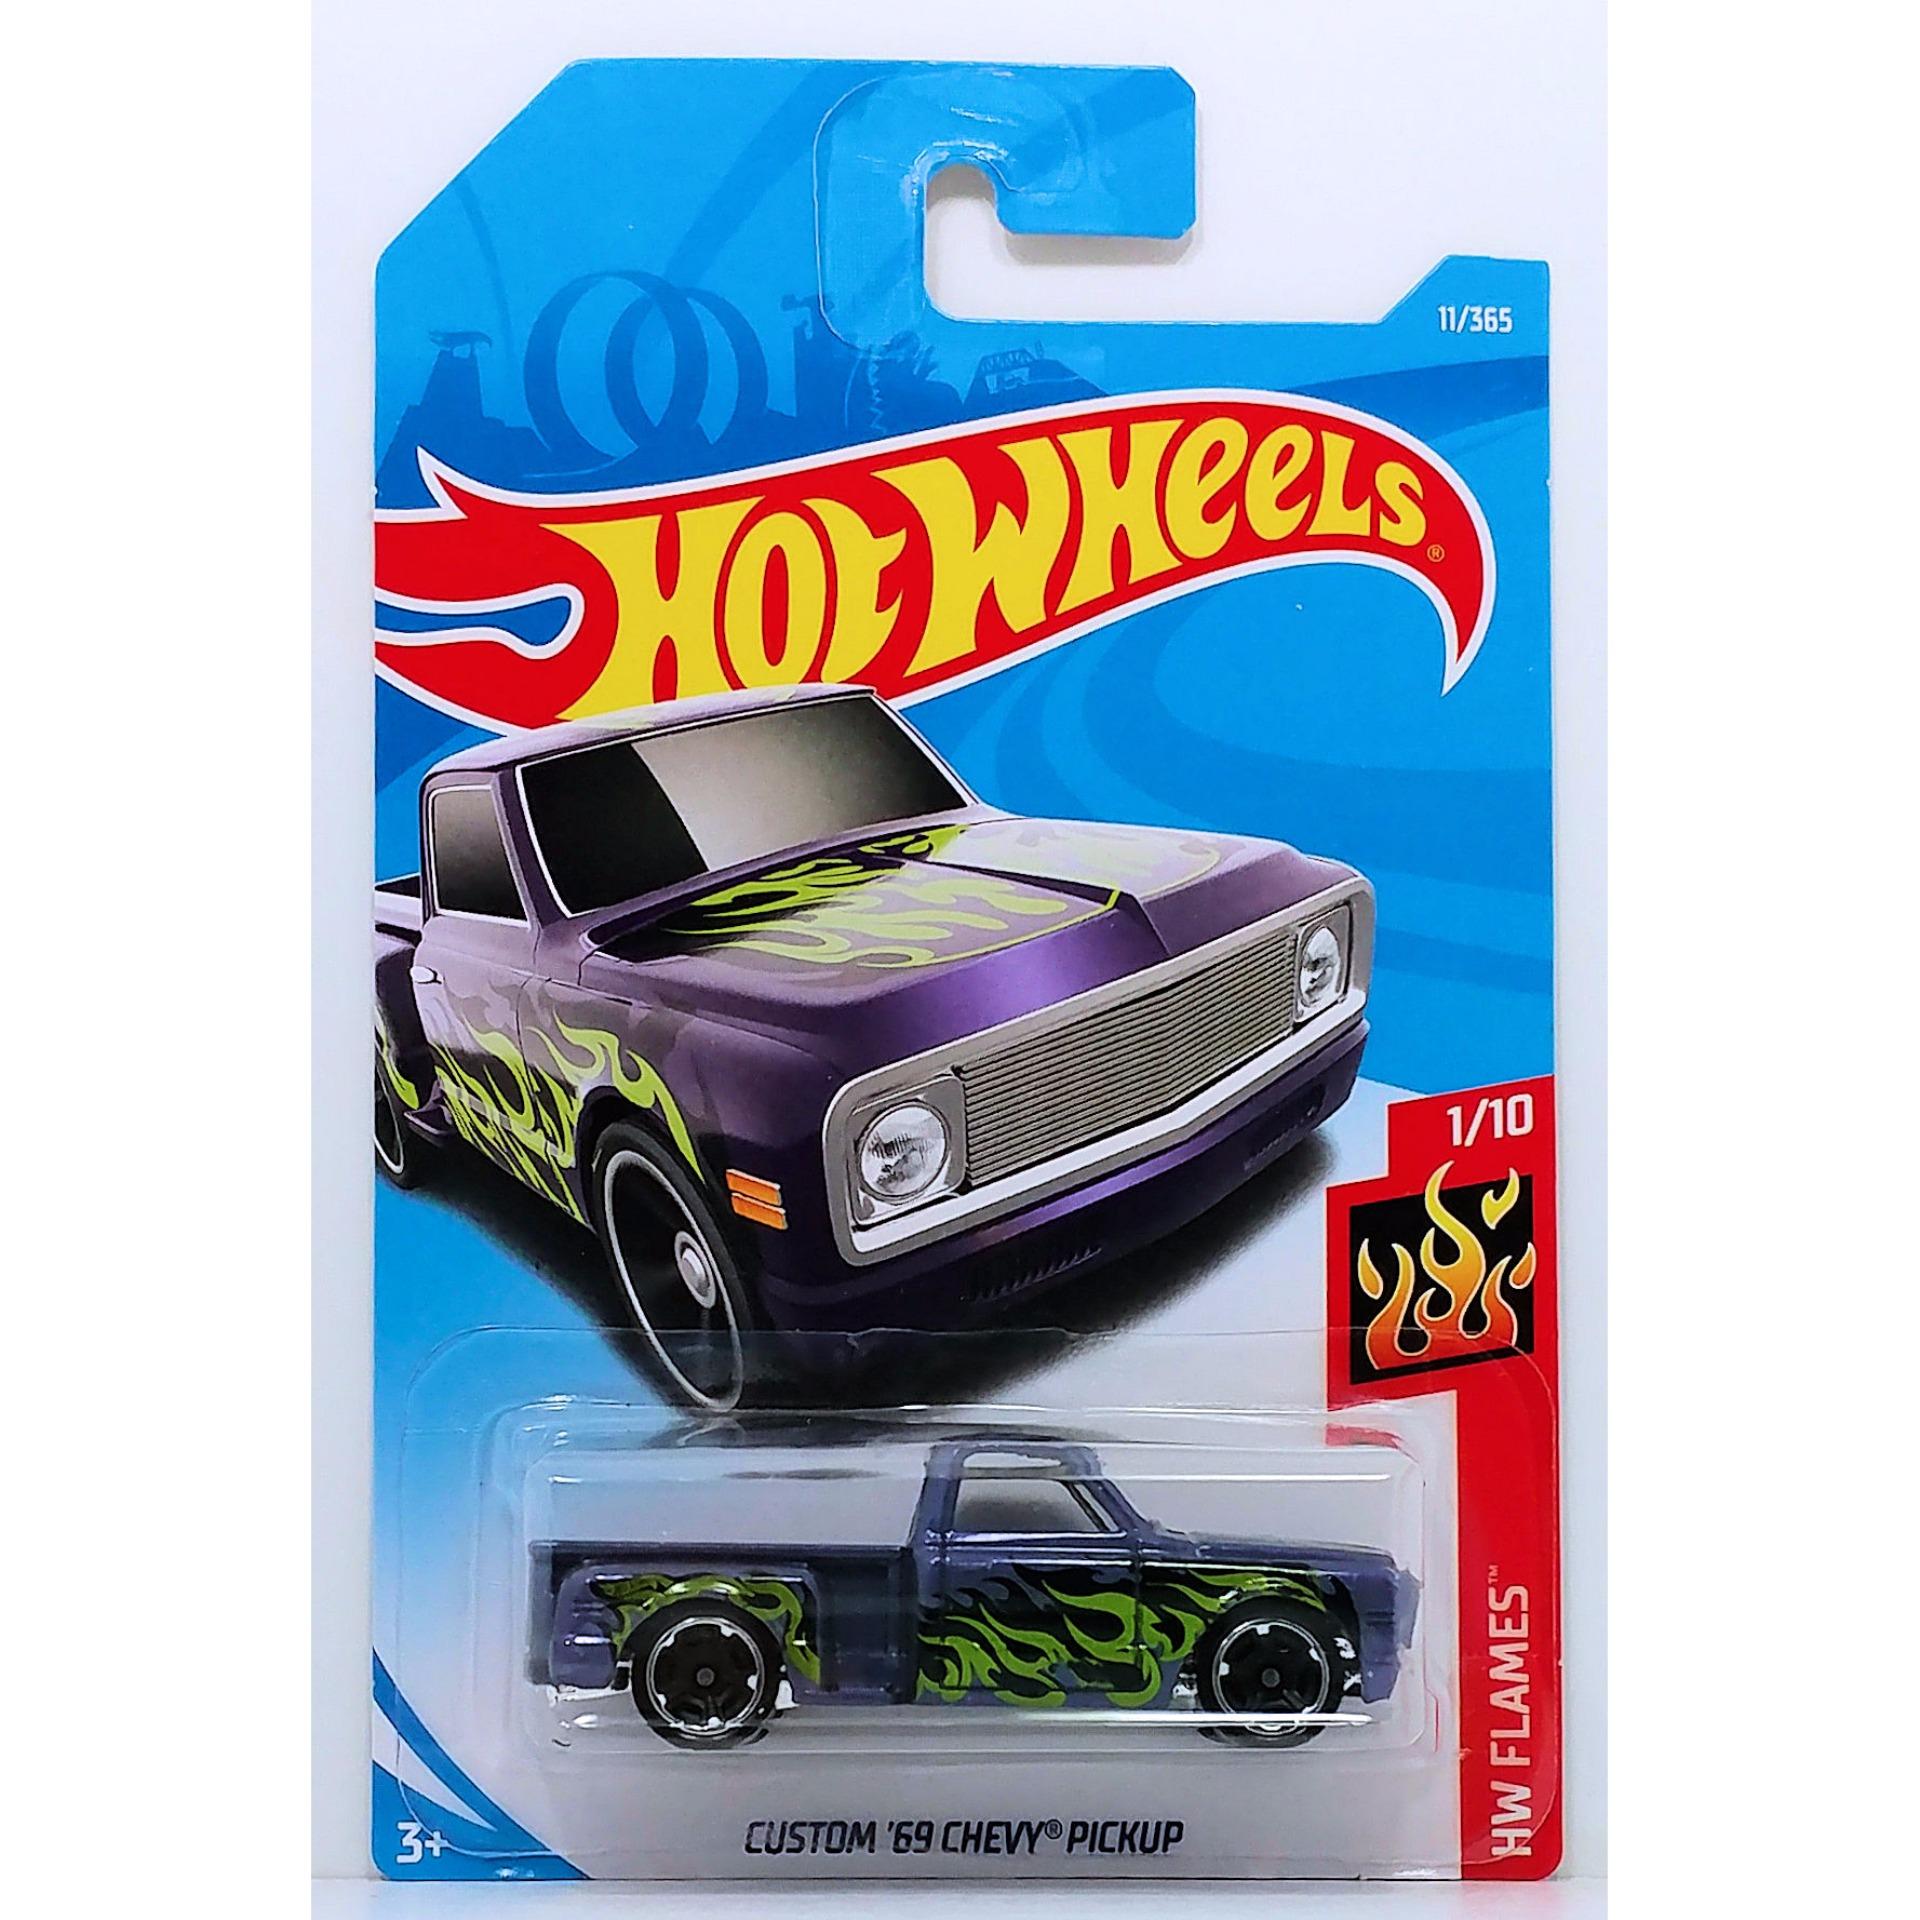 Ô tô mô hình tỉ lệ 1:64 Hot Wheels 2018 độc quyền Kmart Custom '69 Chevy Pickup ( Màu Tím...